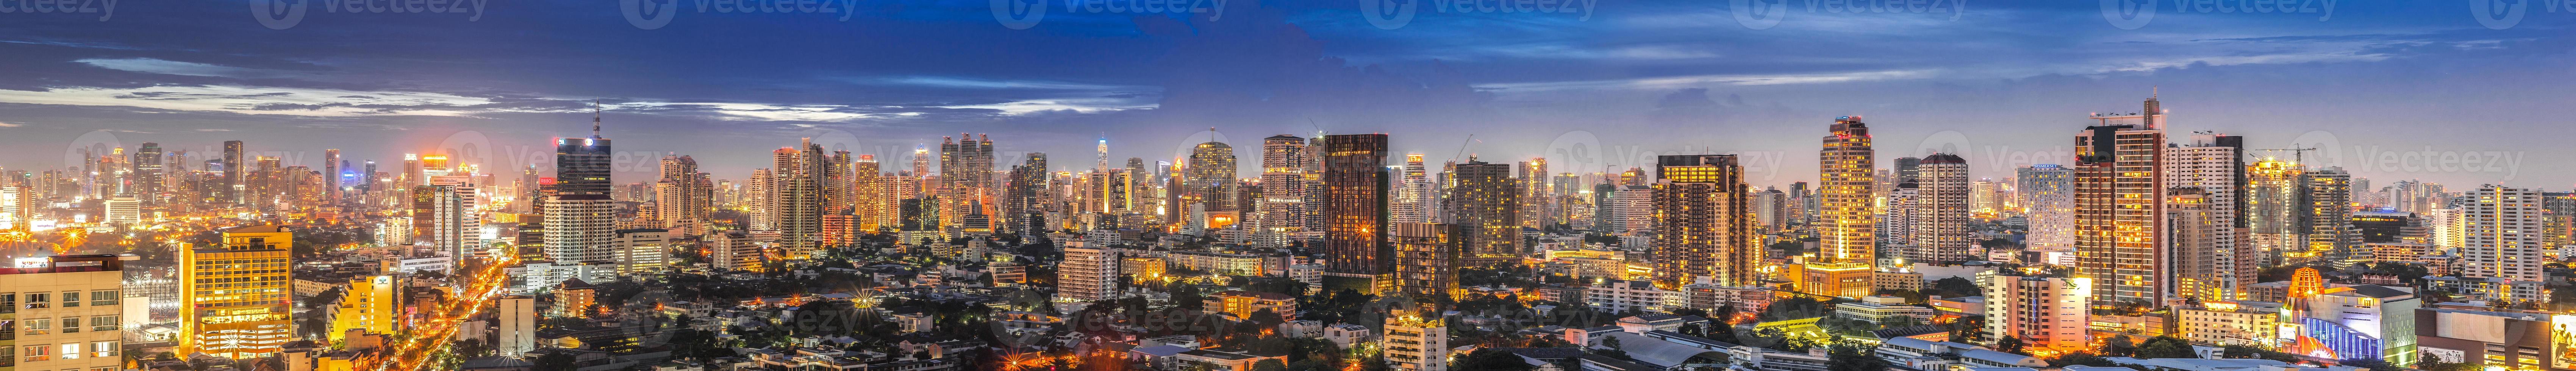 wunderschönes panorama stadtbild bangkok skyline bei sonnenuntergang, thailand foto